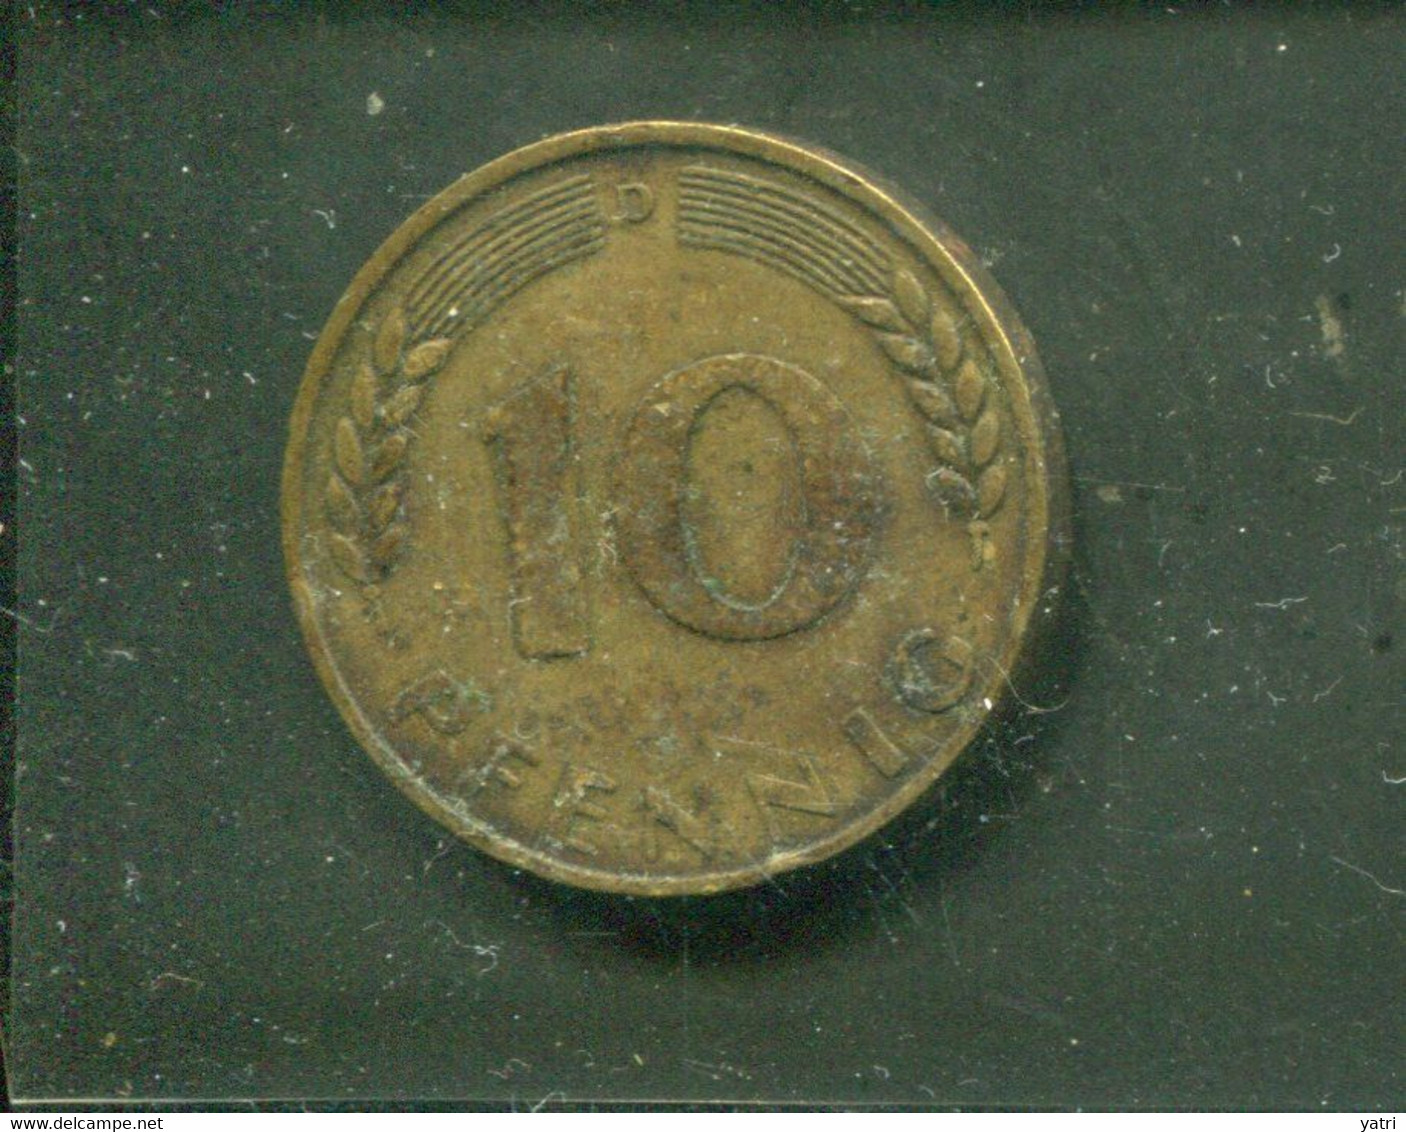 Germania Federale - 10 Pfennig (1949) - 10 Pfennig